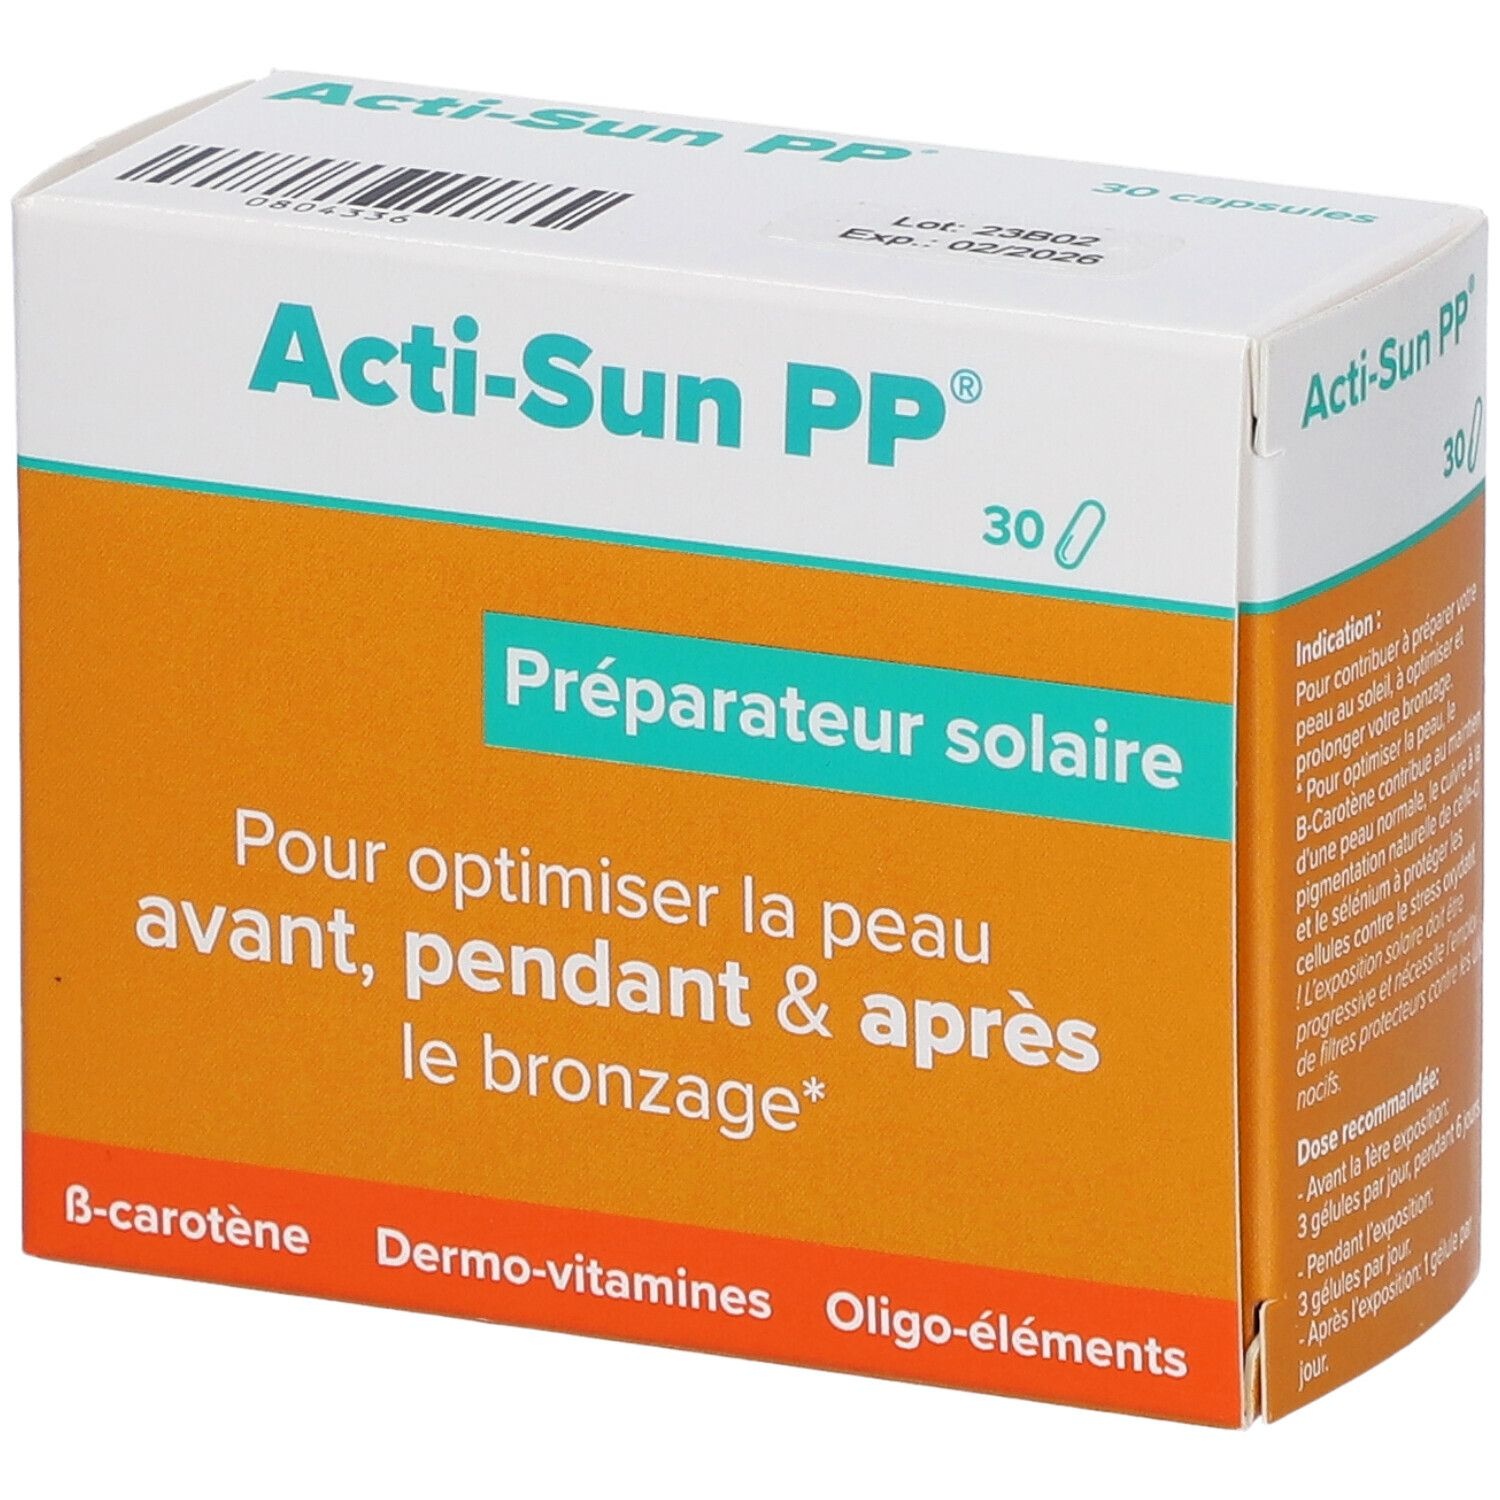 Acti-Sun PP® 30 pc(s) capsule(s)